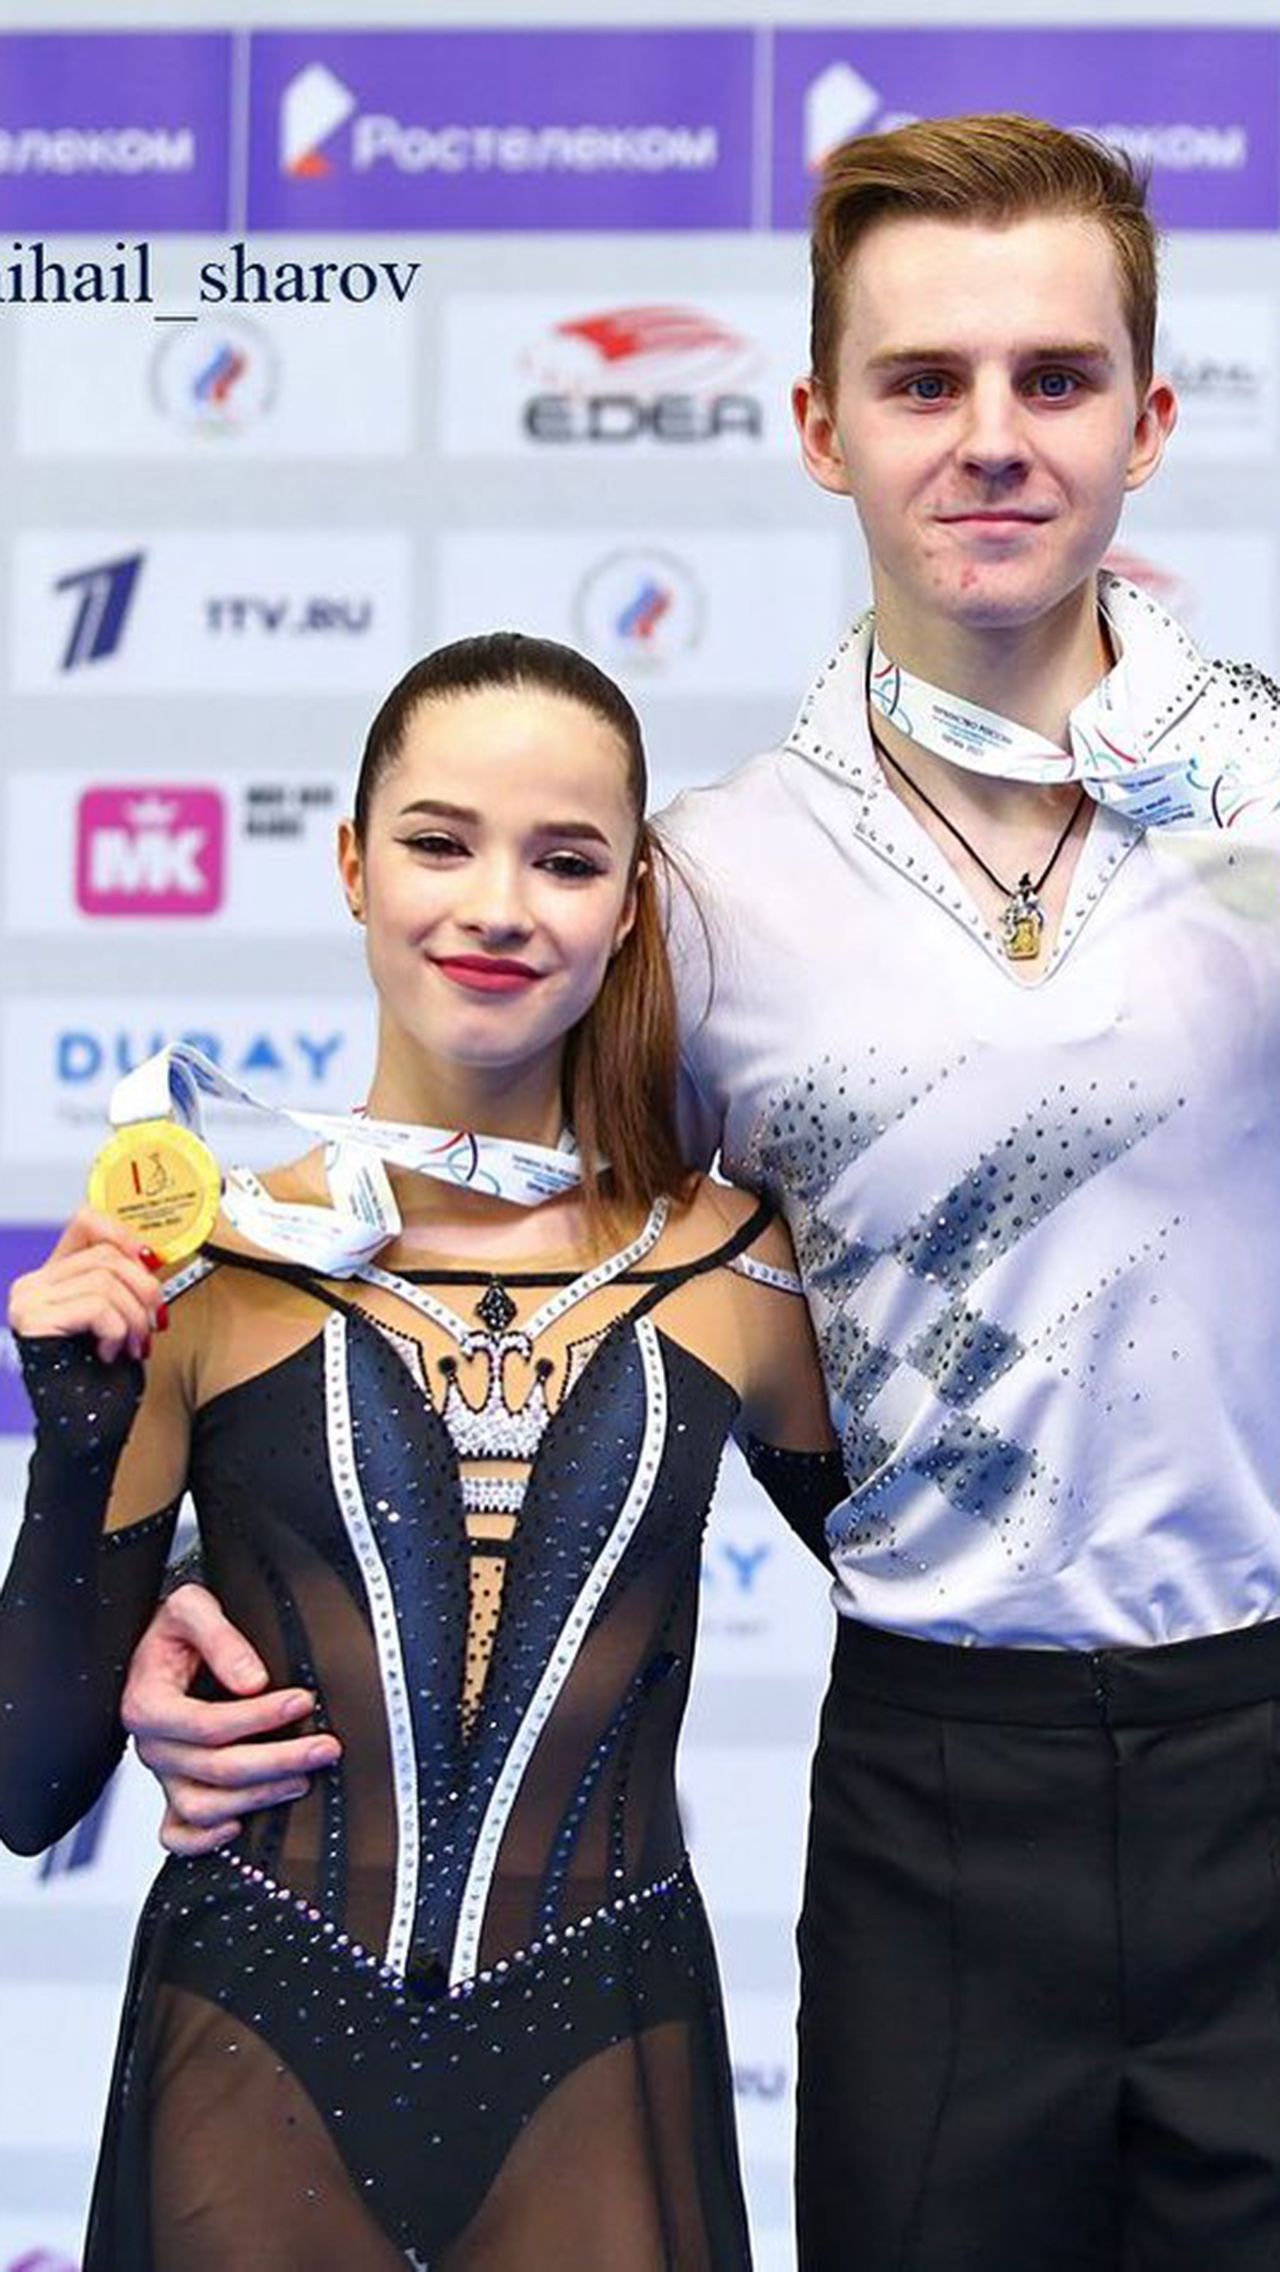 Анна, которая занимается у Екатерины Рублёвой и Ивана Шефера, тоже берёт награды наивысшей пробы. Спортсменка в паре с Егором Гончаровым выиграла первенство России в танцах на льду.